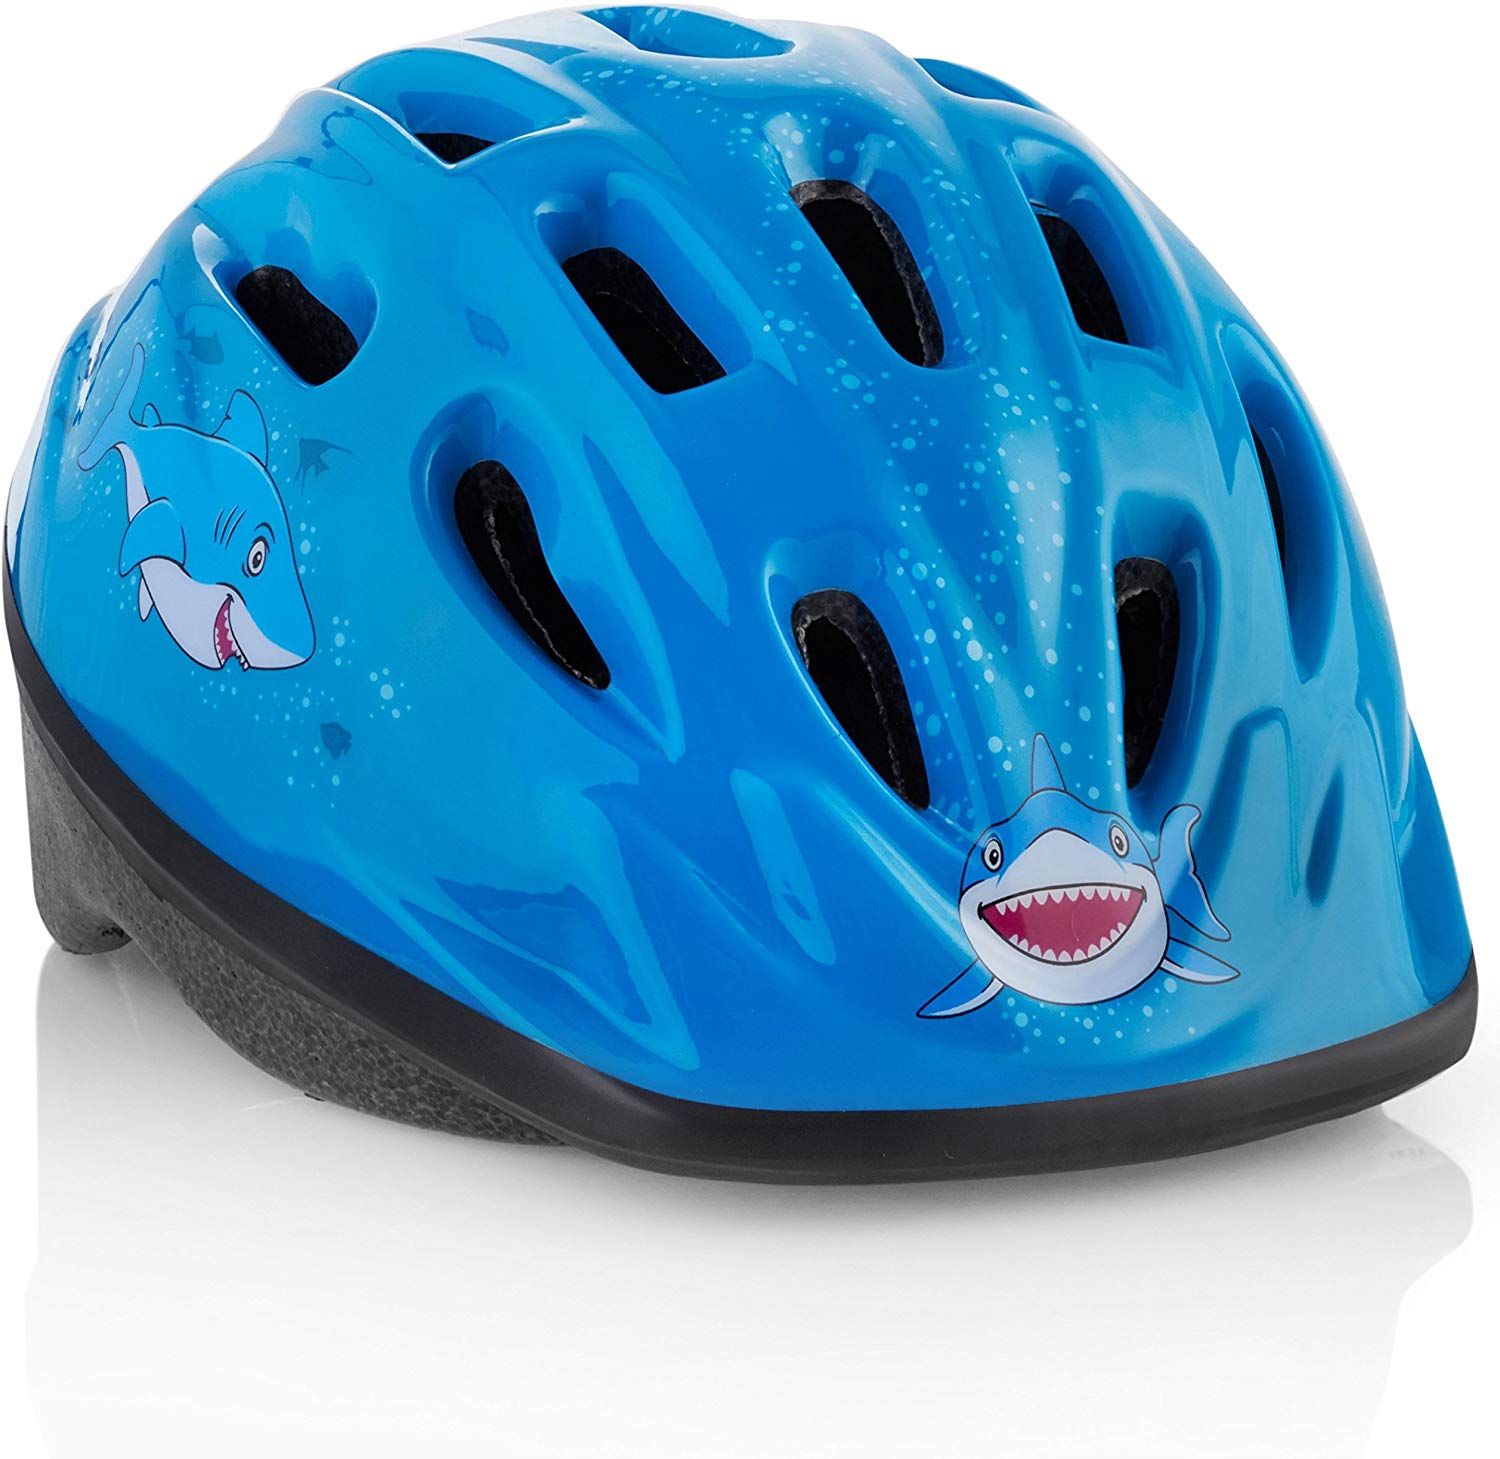 TeamObsidian Adjustable Kids Bike Helmet